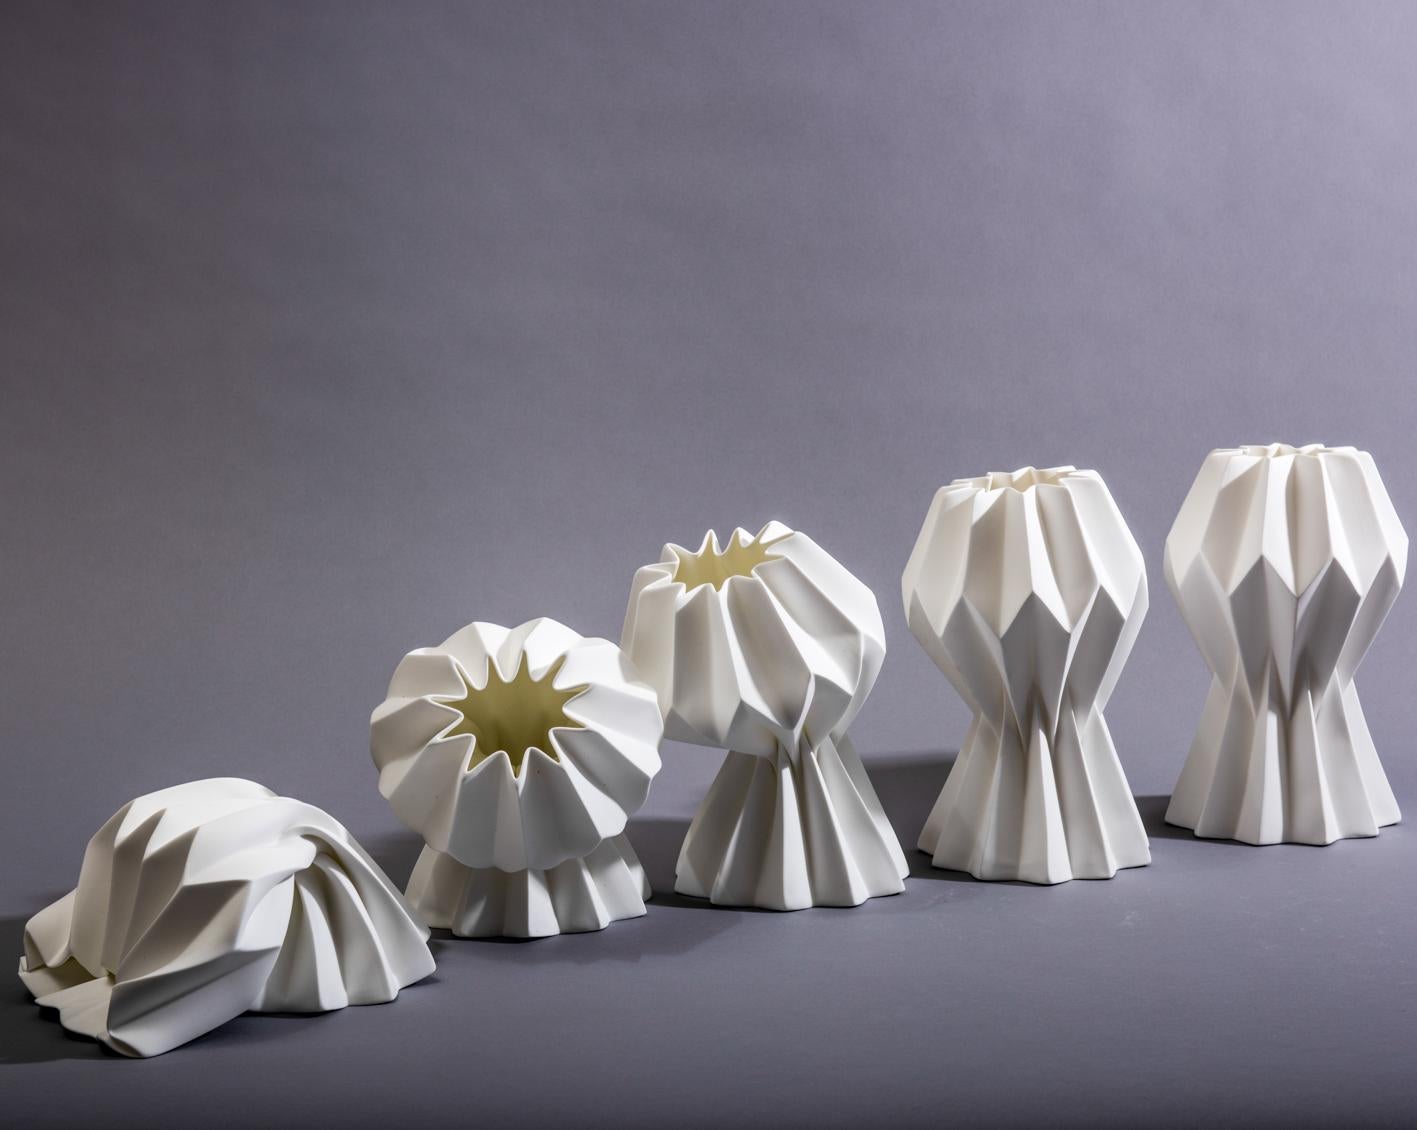 “Slump” Contemporary Origami Ceramic Vase by Studio Morison, Full Slump Type 5